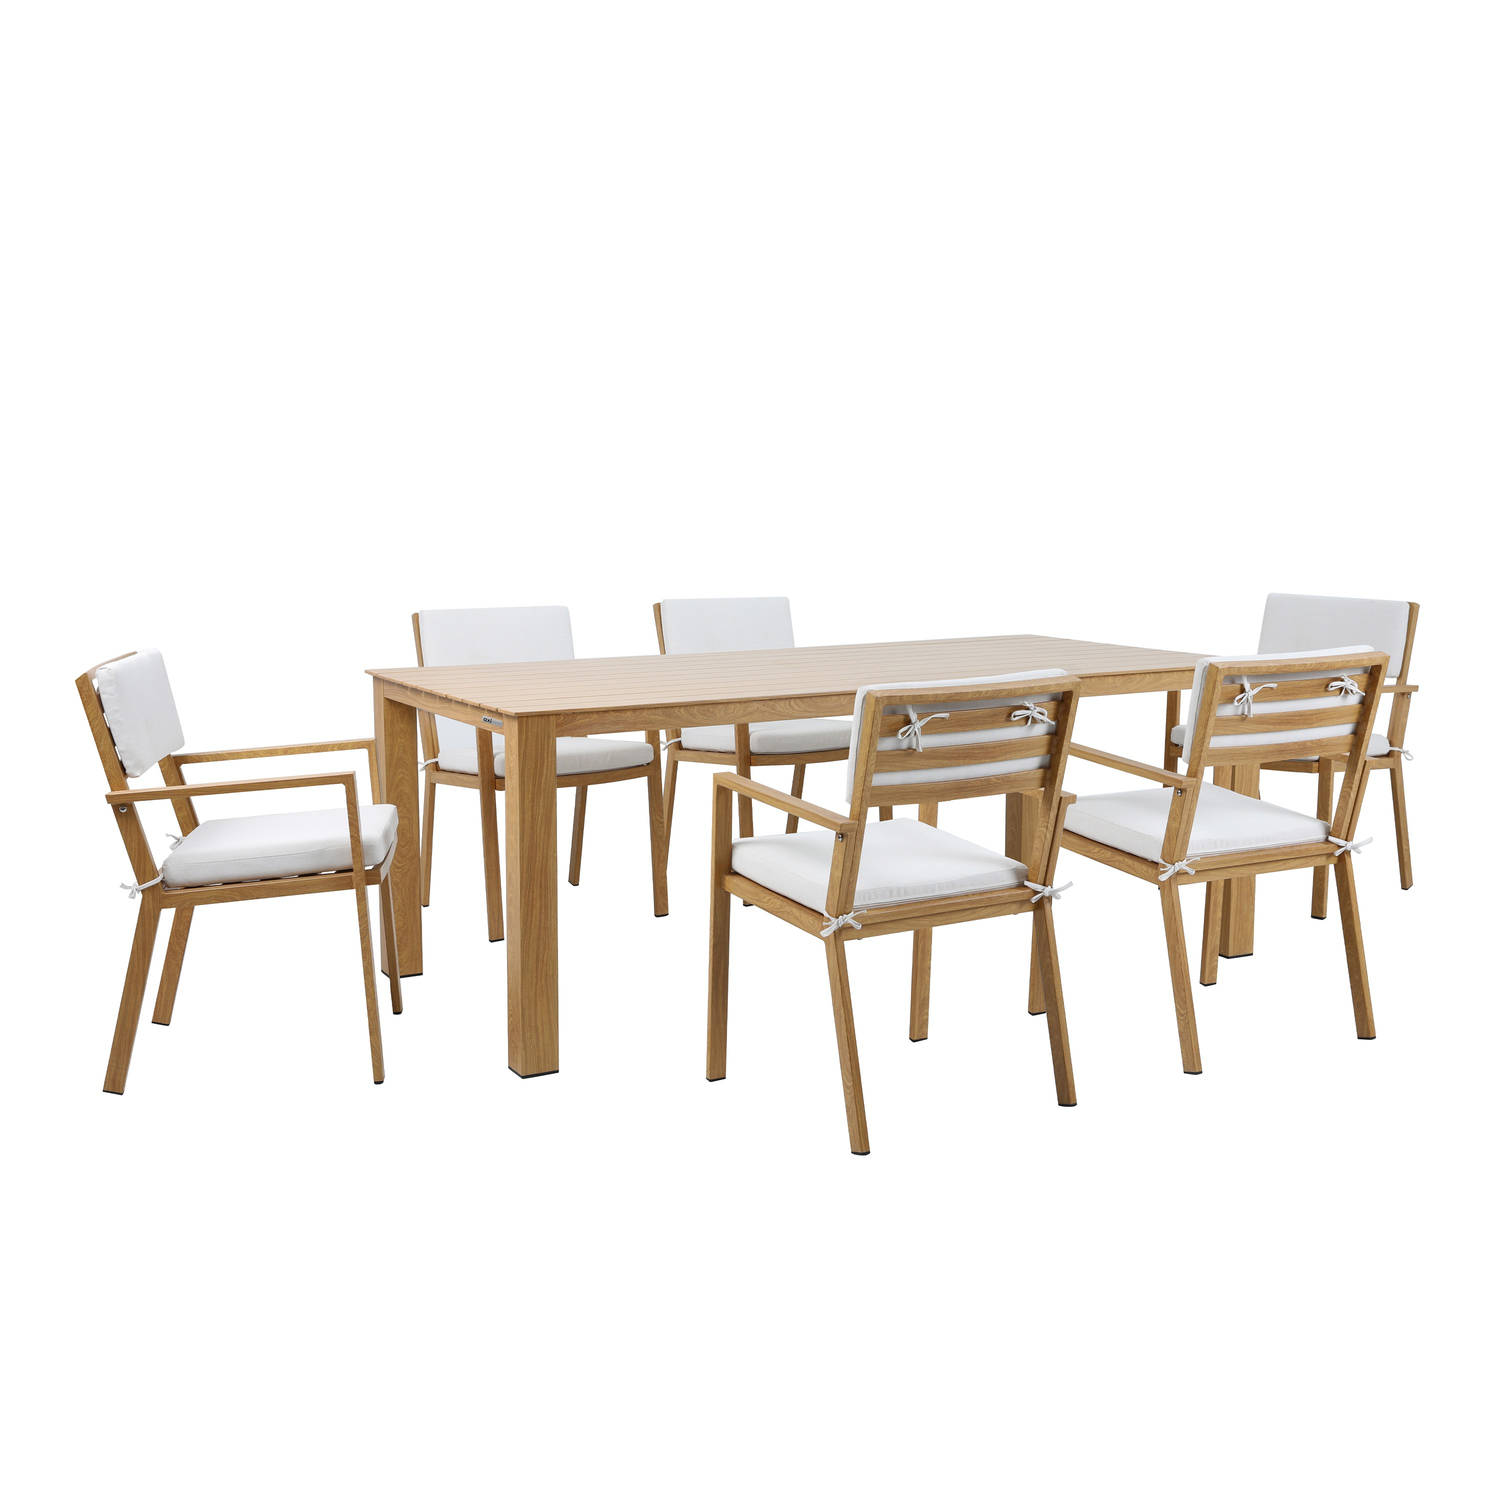 AXI Jada Tuinset met 6 stoelen in Hout look & Beige Dining set voor tuin in Aluminium-Polyester